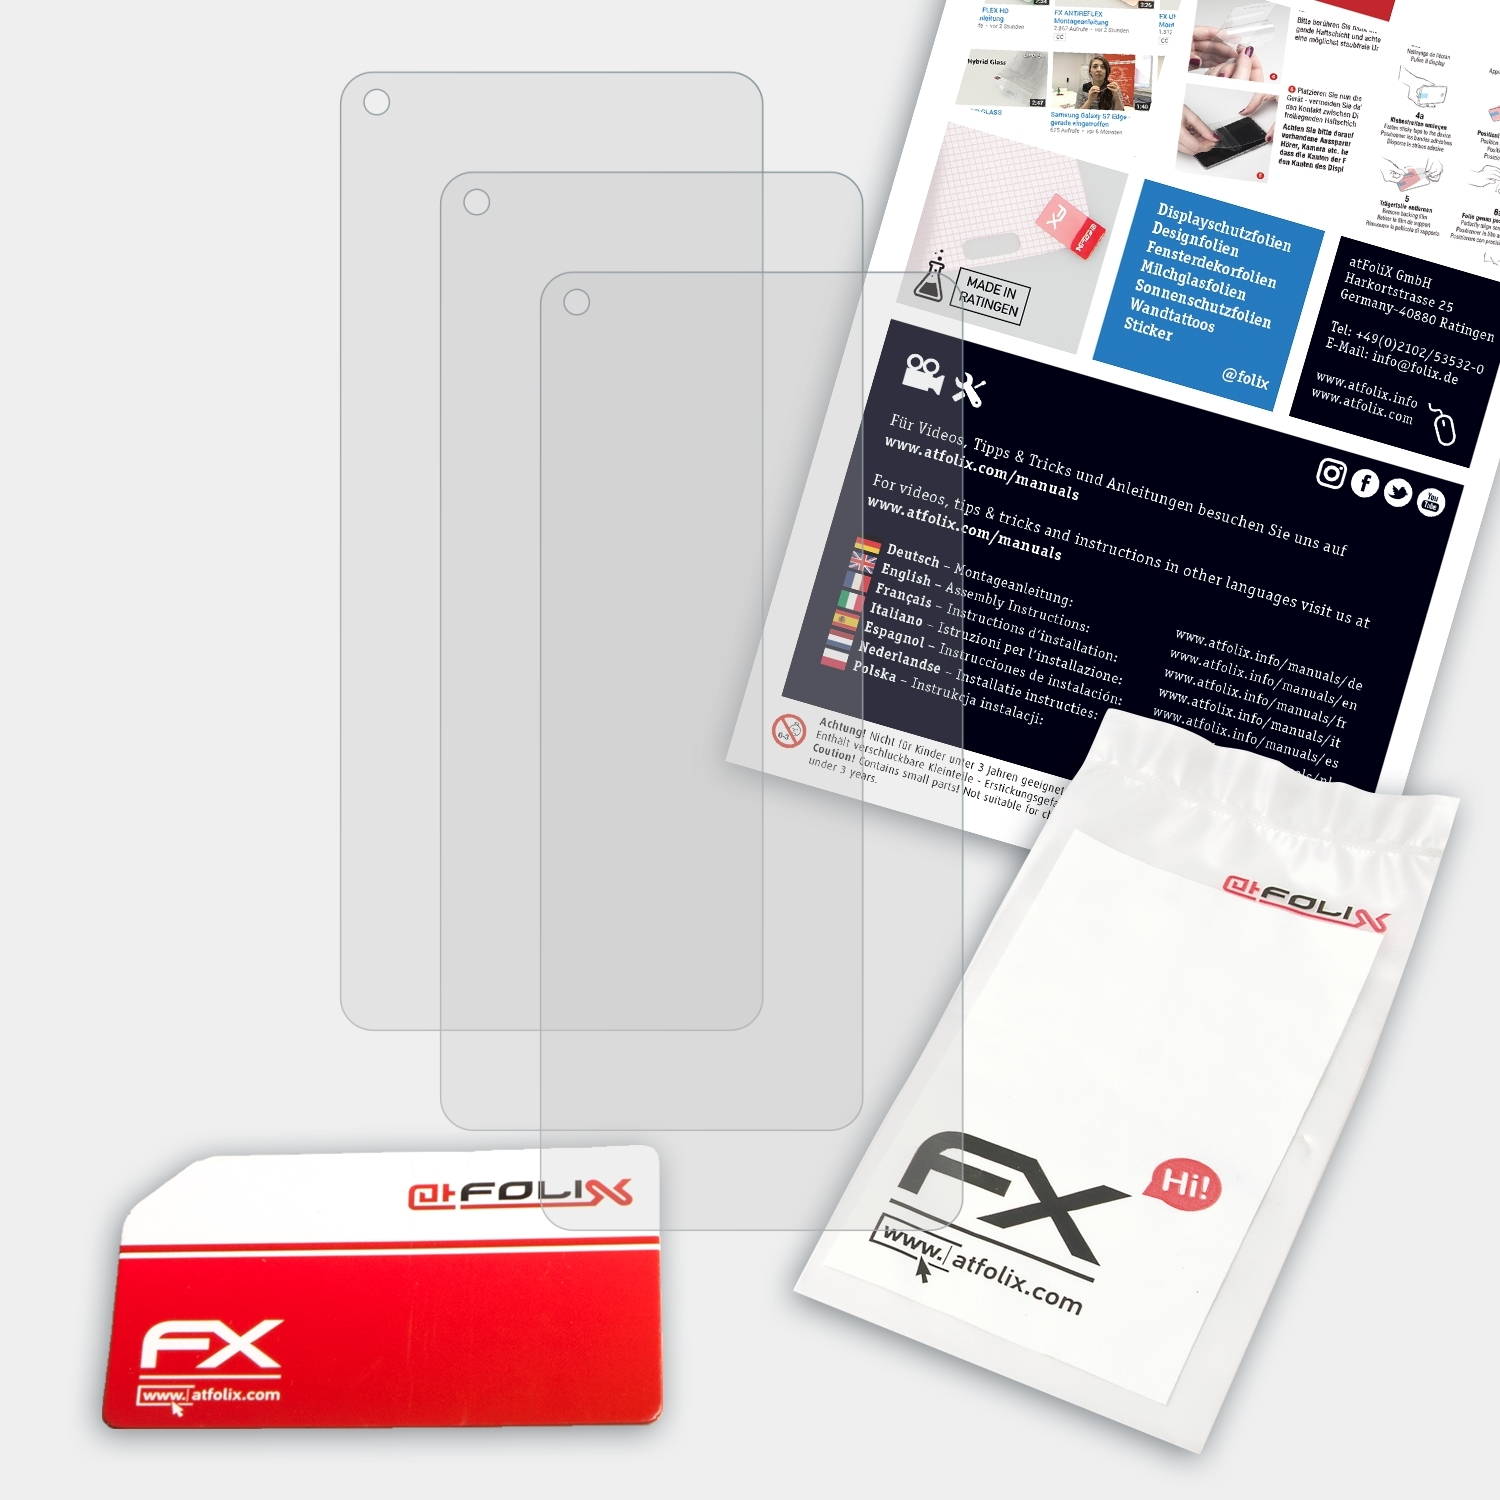 FX-Antireflex Oppo ATFOLIX Displayschutz(für F19 Pro) 3x